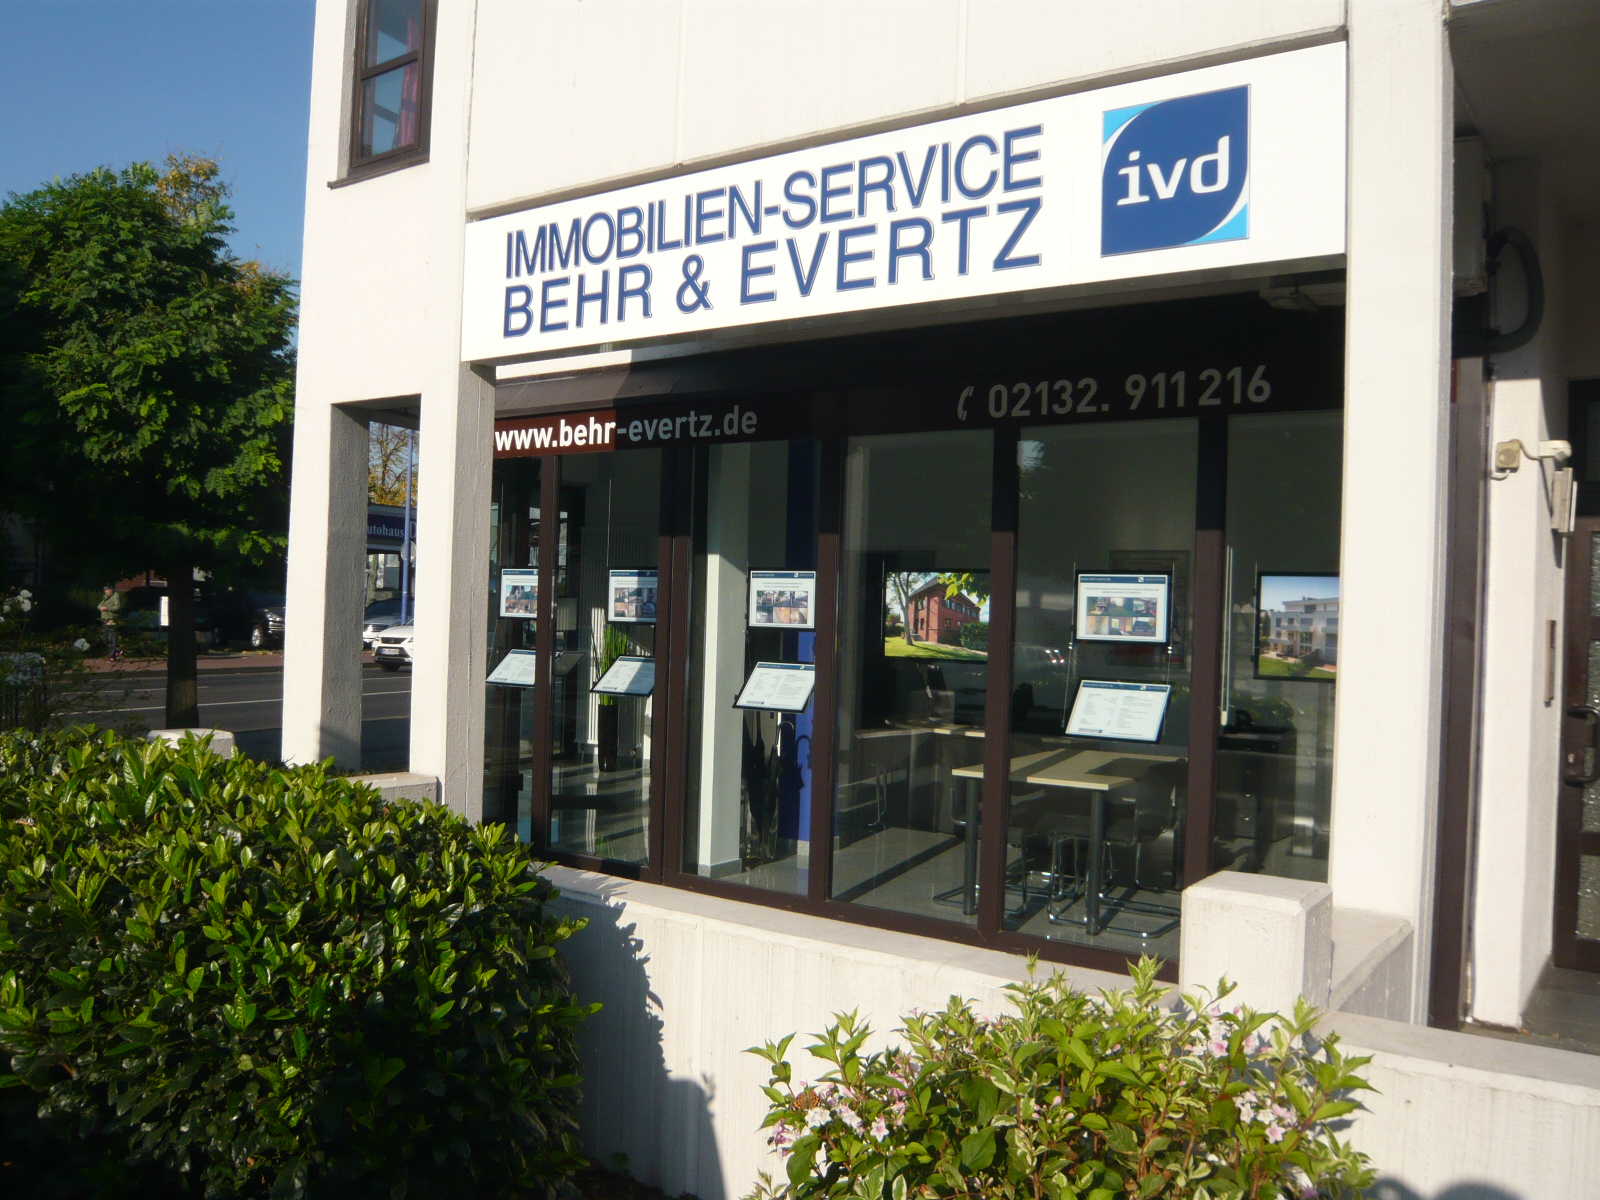 Immobilien-Service Behr & Evertz, Düsseldorfer Str. 52 in Meerbusch